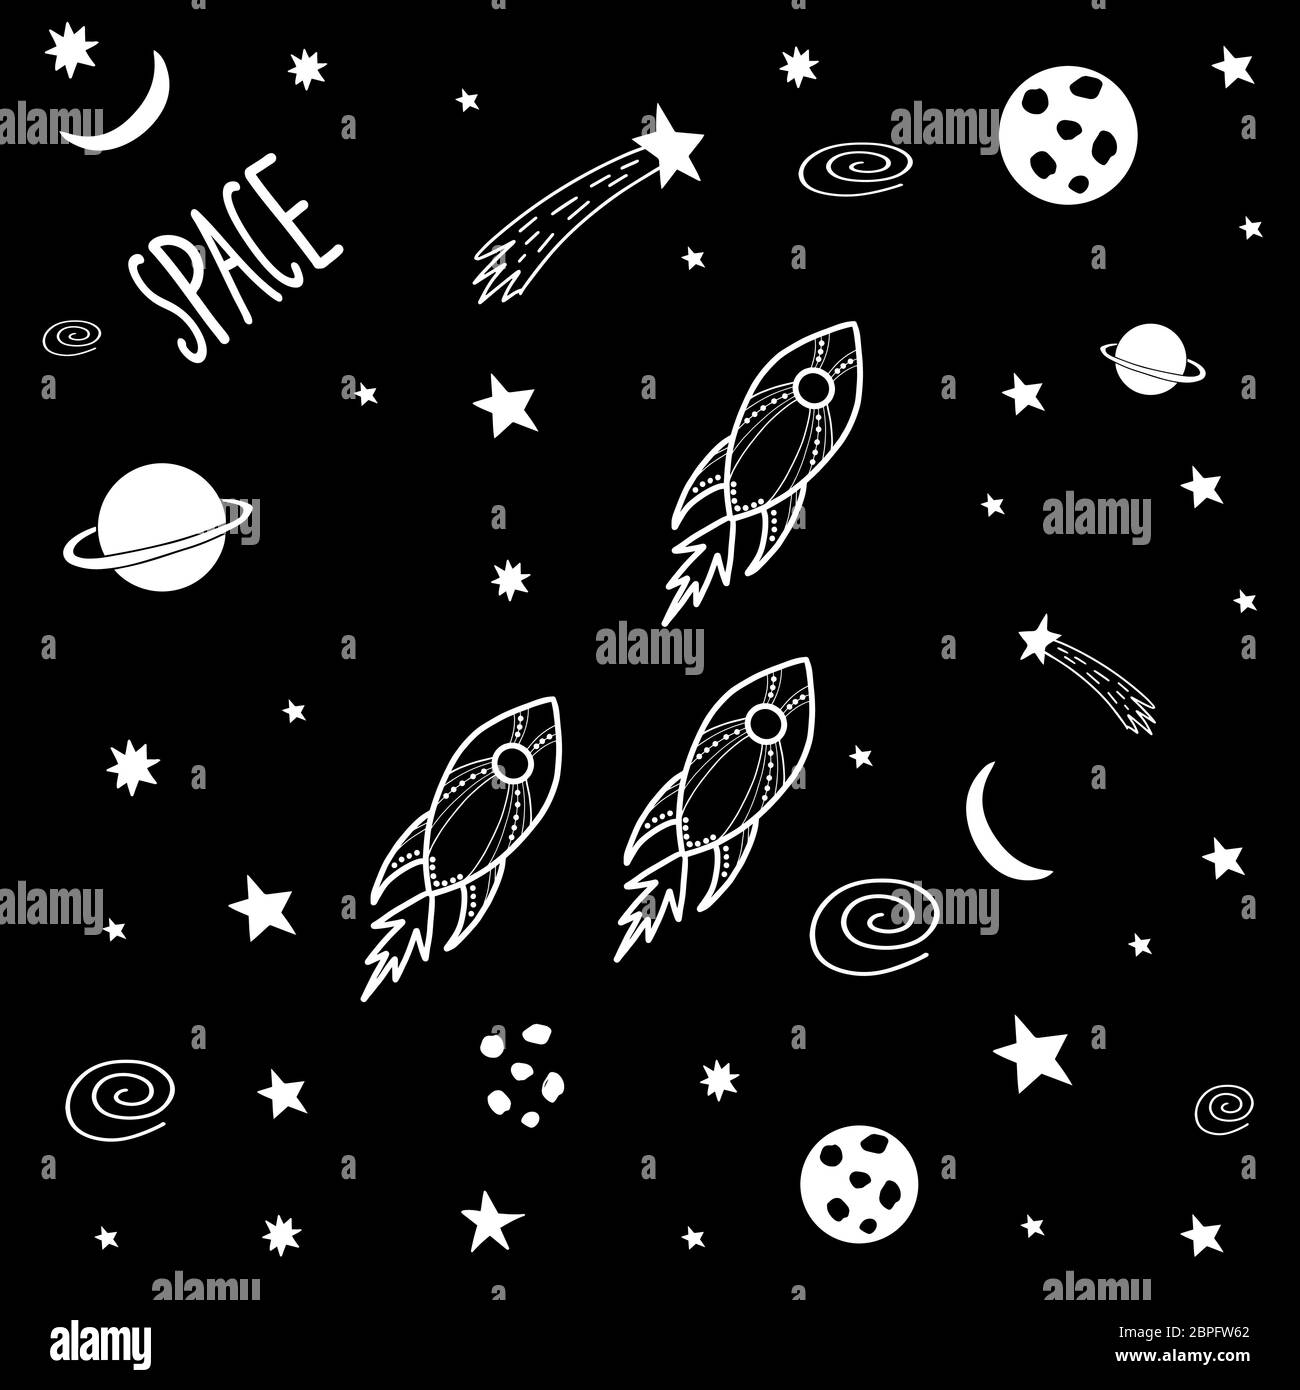 Nette Cartoon Doodle Raketen im Weltraum. Galaxy Muster für Drucke auf T-Shirt, Stoff, Papier. Vektorgrafik. Stock Vektor